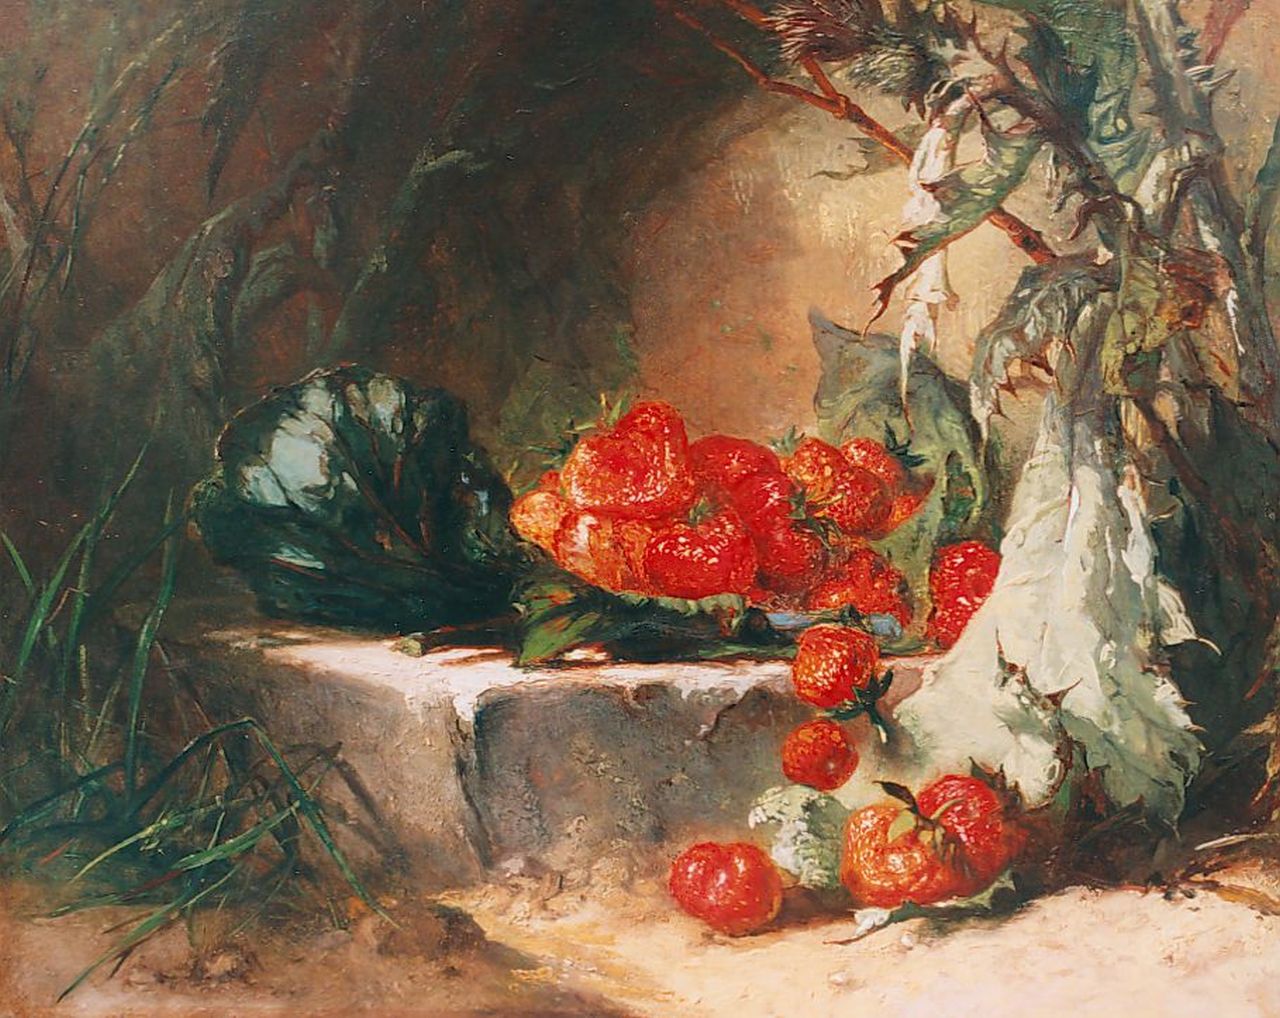 Vos M.  | Maria Vos, Stilleven met aardbeien, olieverf op paneel 33,2 x 41,3 cm